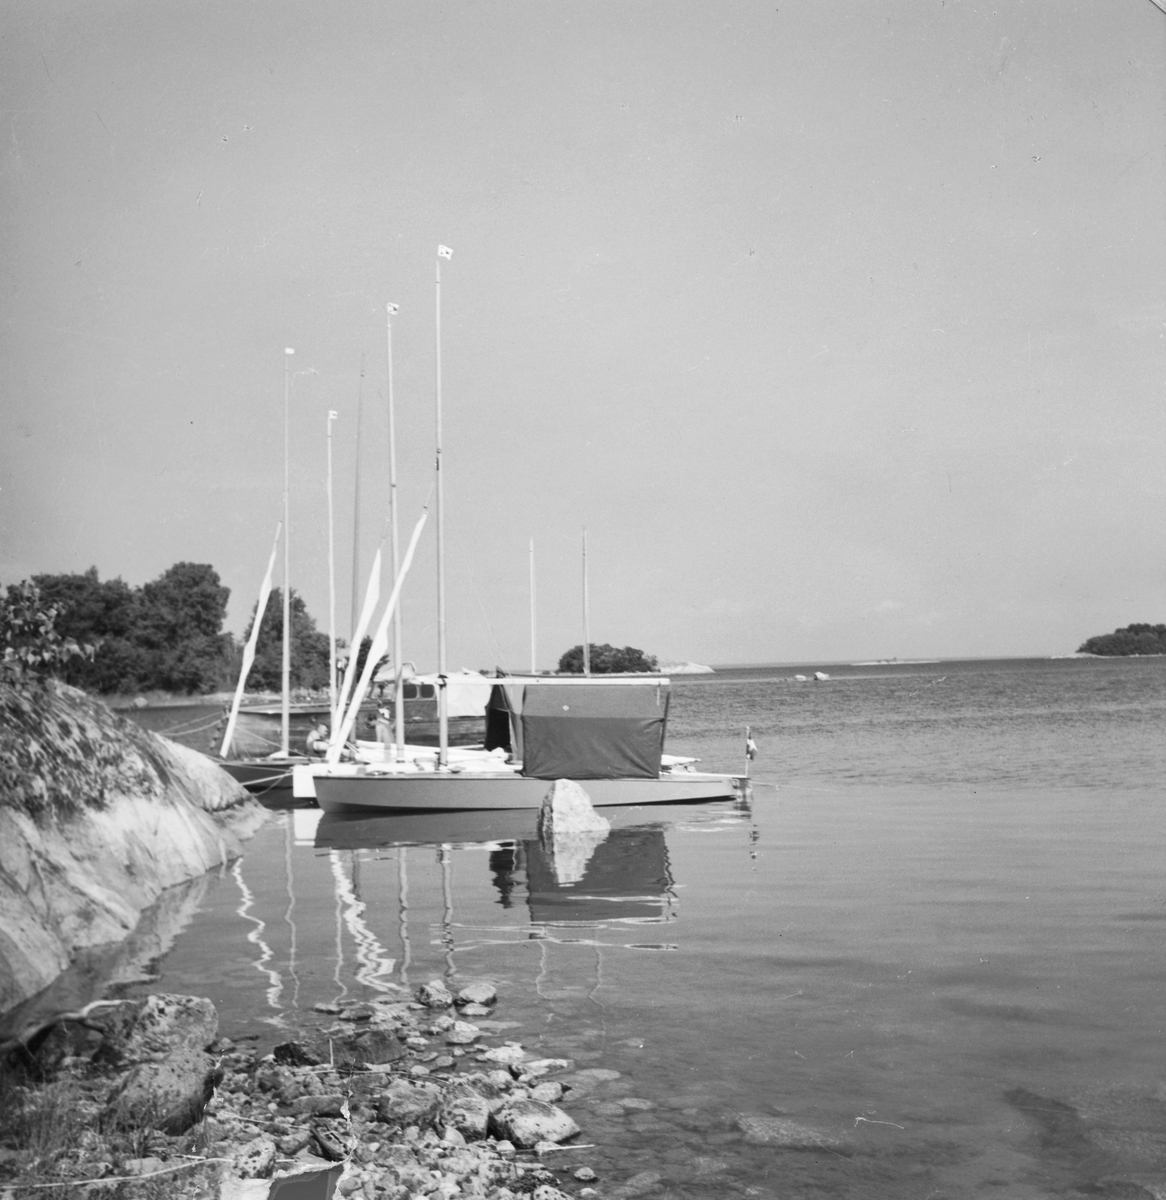 "Några E-kanoter från Ålstens Båt Sällskap omkring år 1950" "Motorbåten i bakgrunden troligen Allan Rosengrens" "Den vita E-kanoten troligen 'Hjorten'"